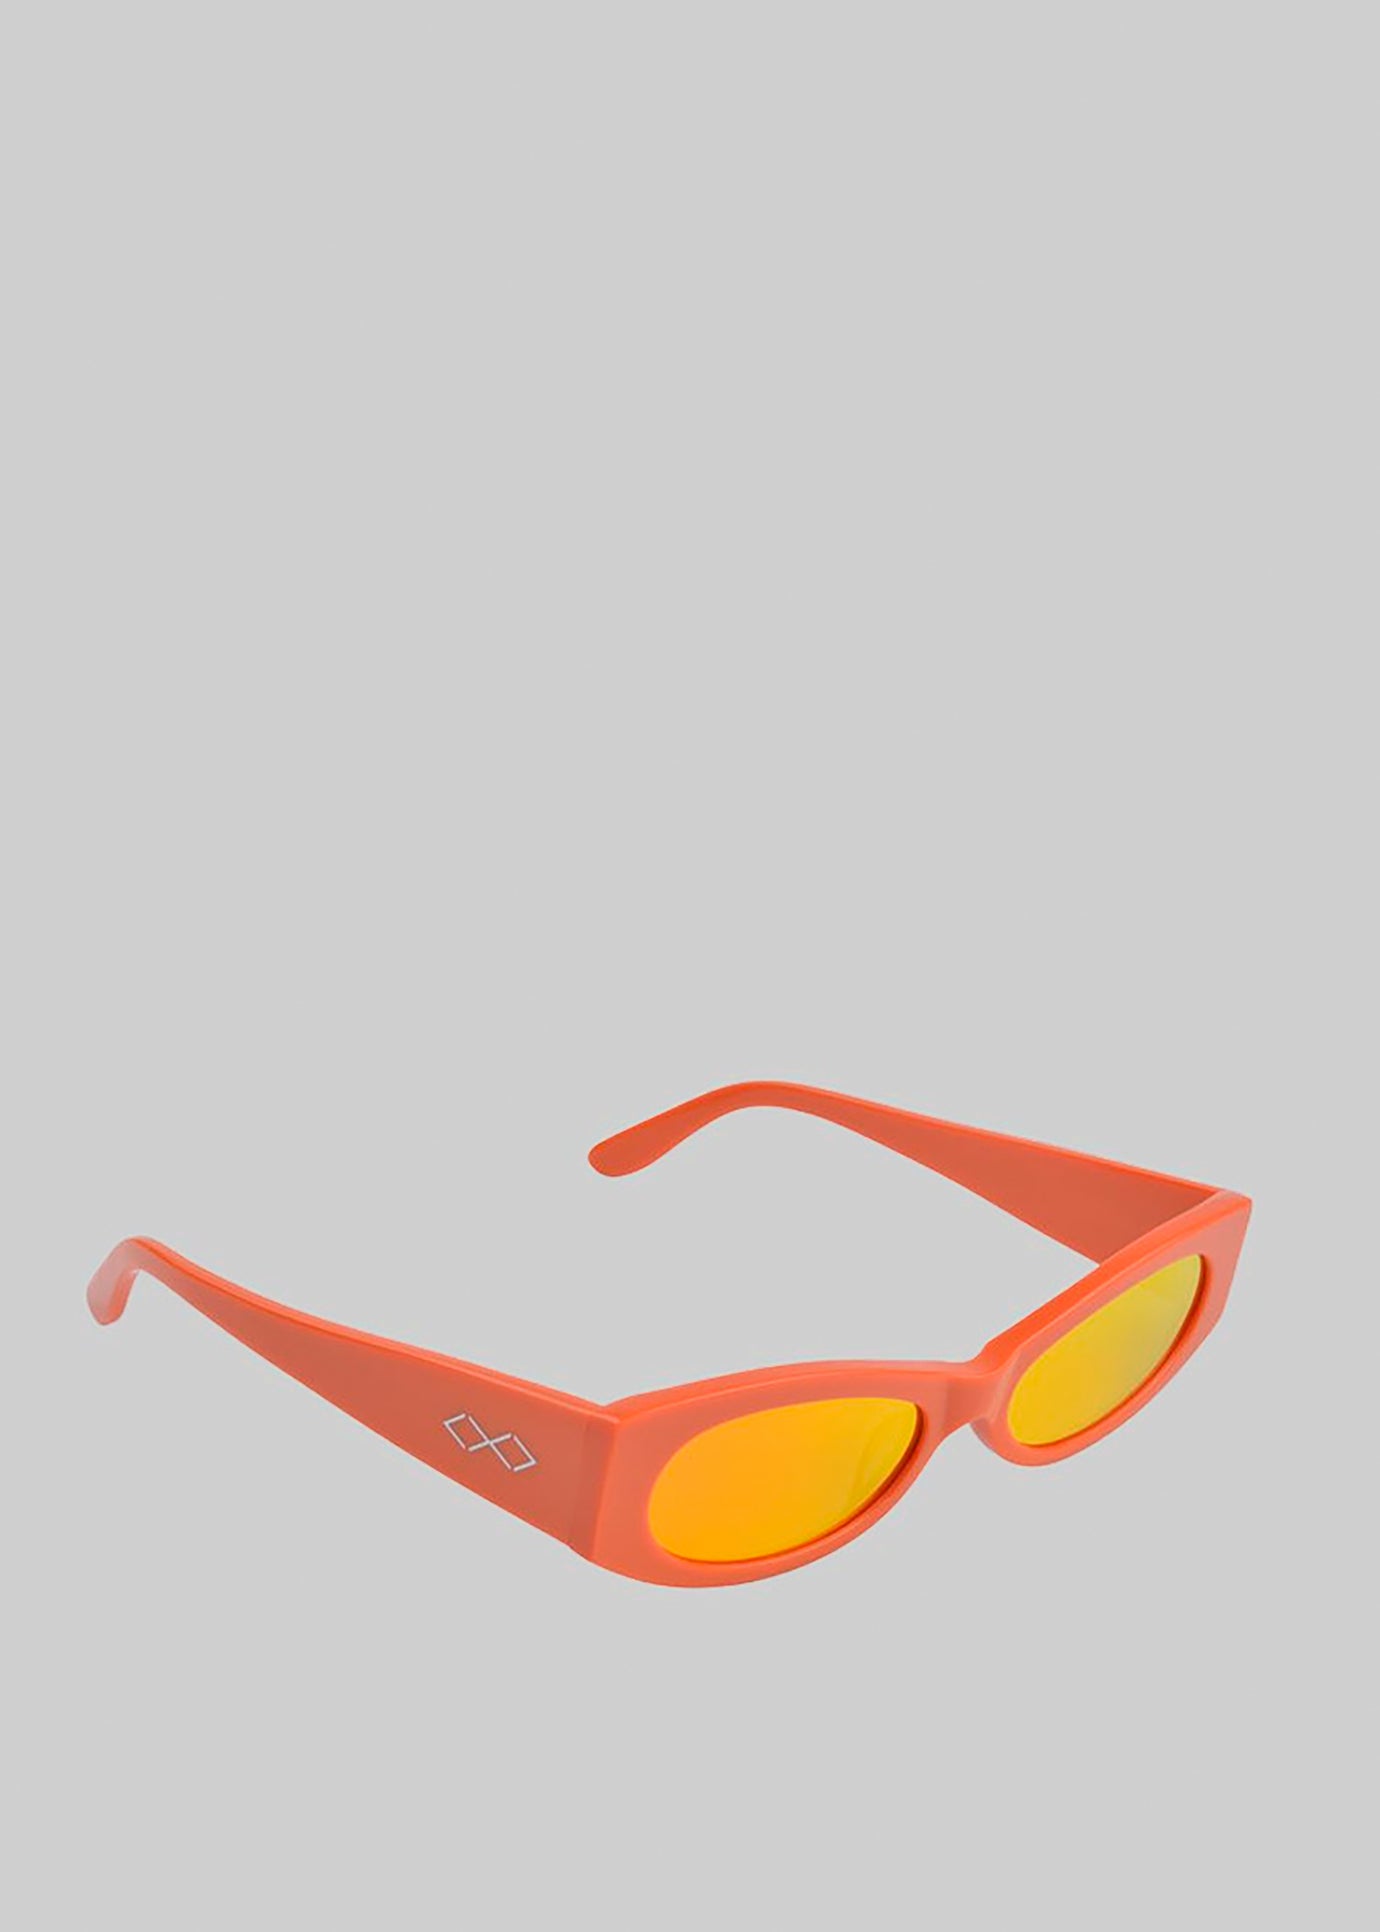 Karen Wazen Ciara Sunglasses - Carrot